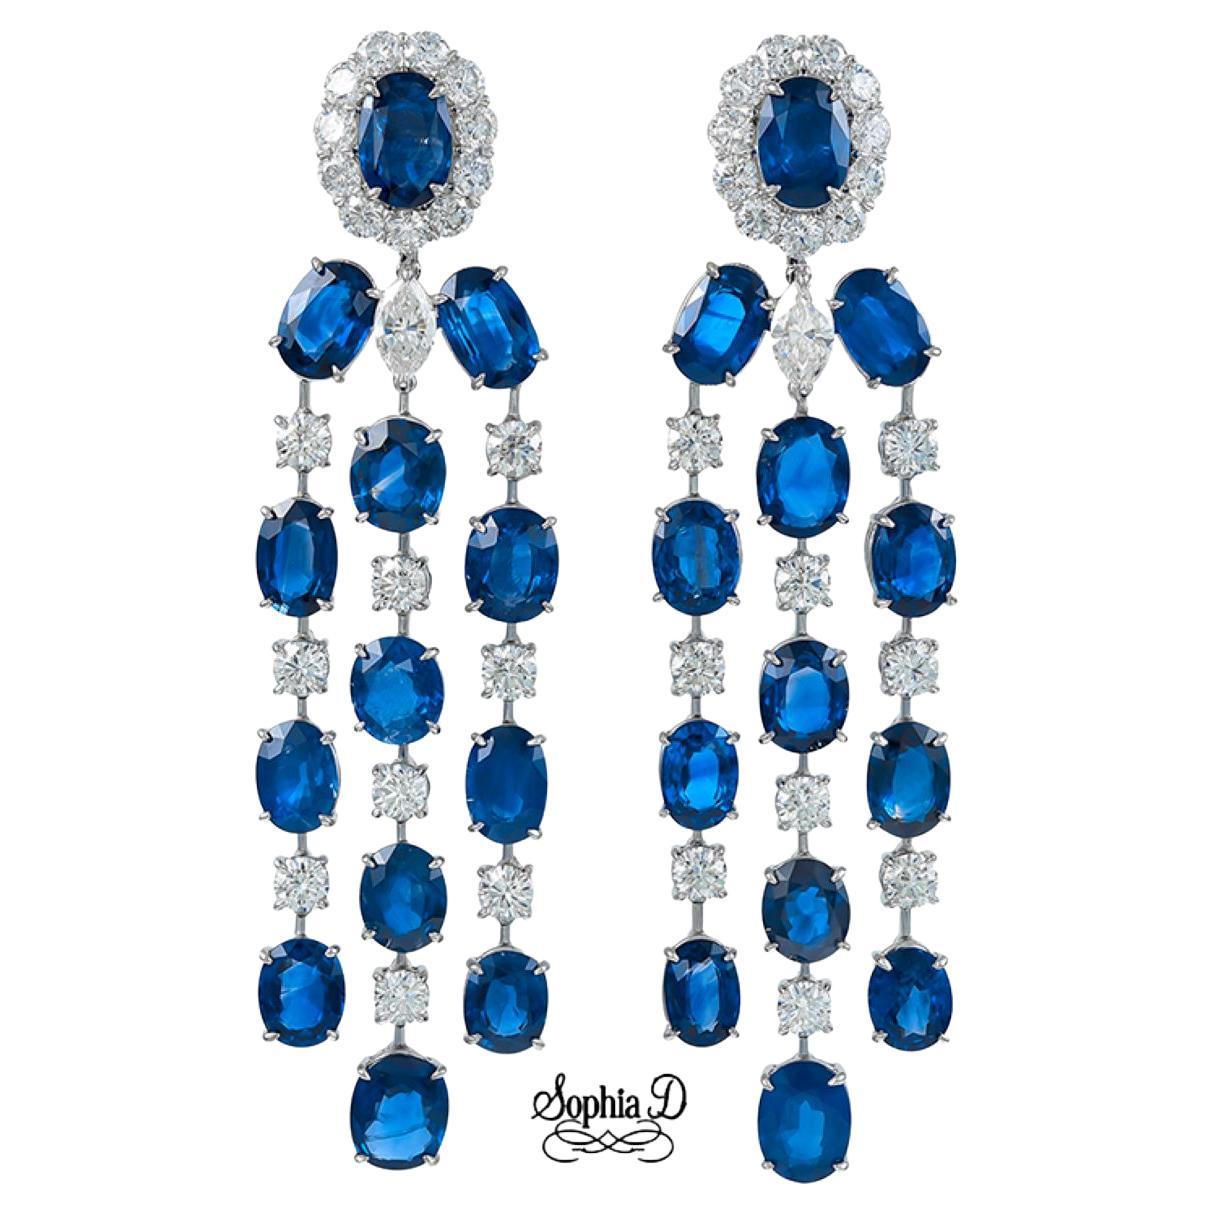 Sophia D. Ohrringe aus Platin mit blauen Saphiren und Diamanten